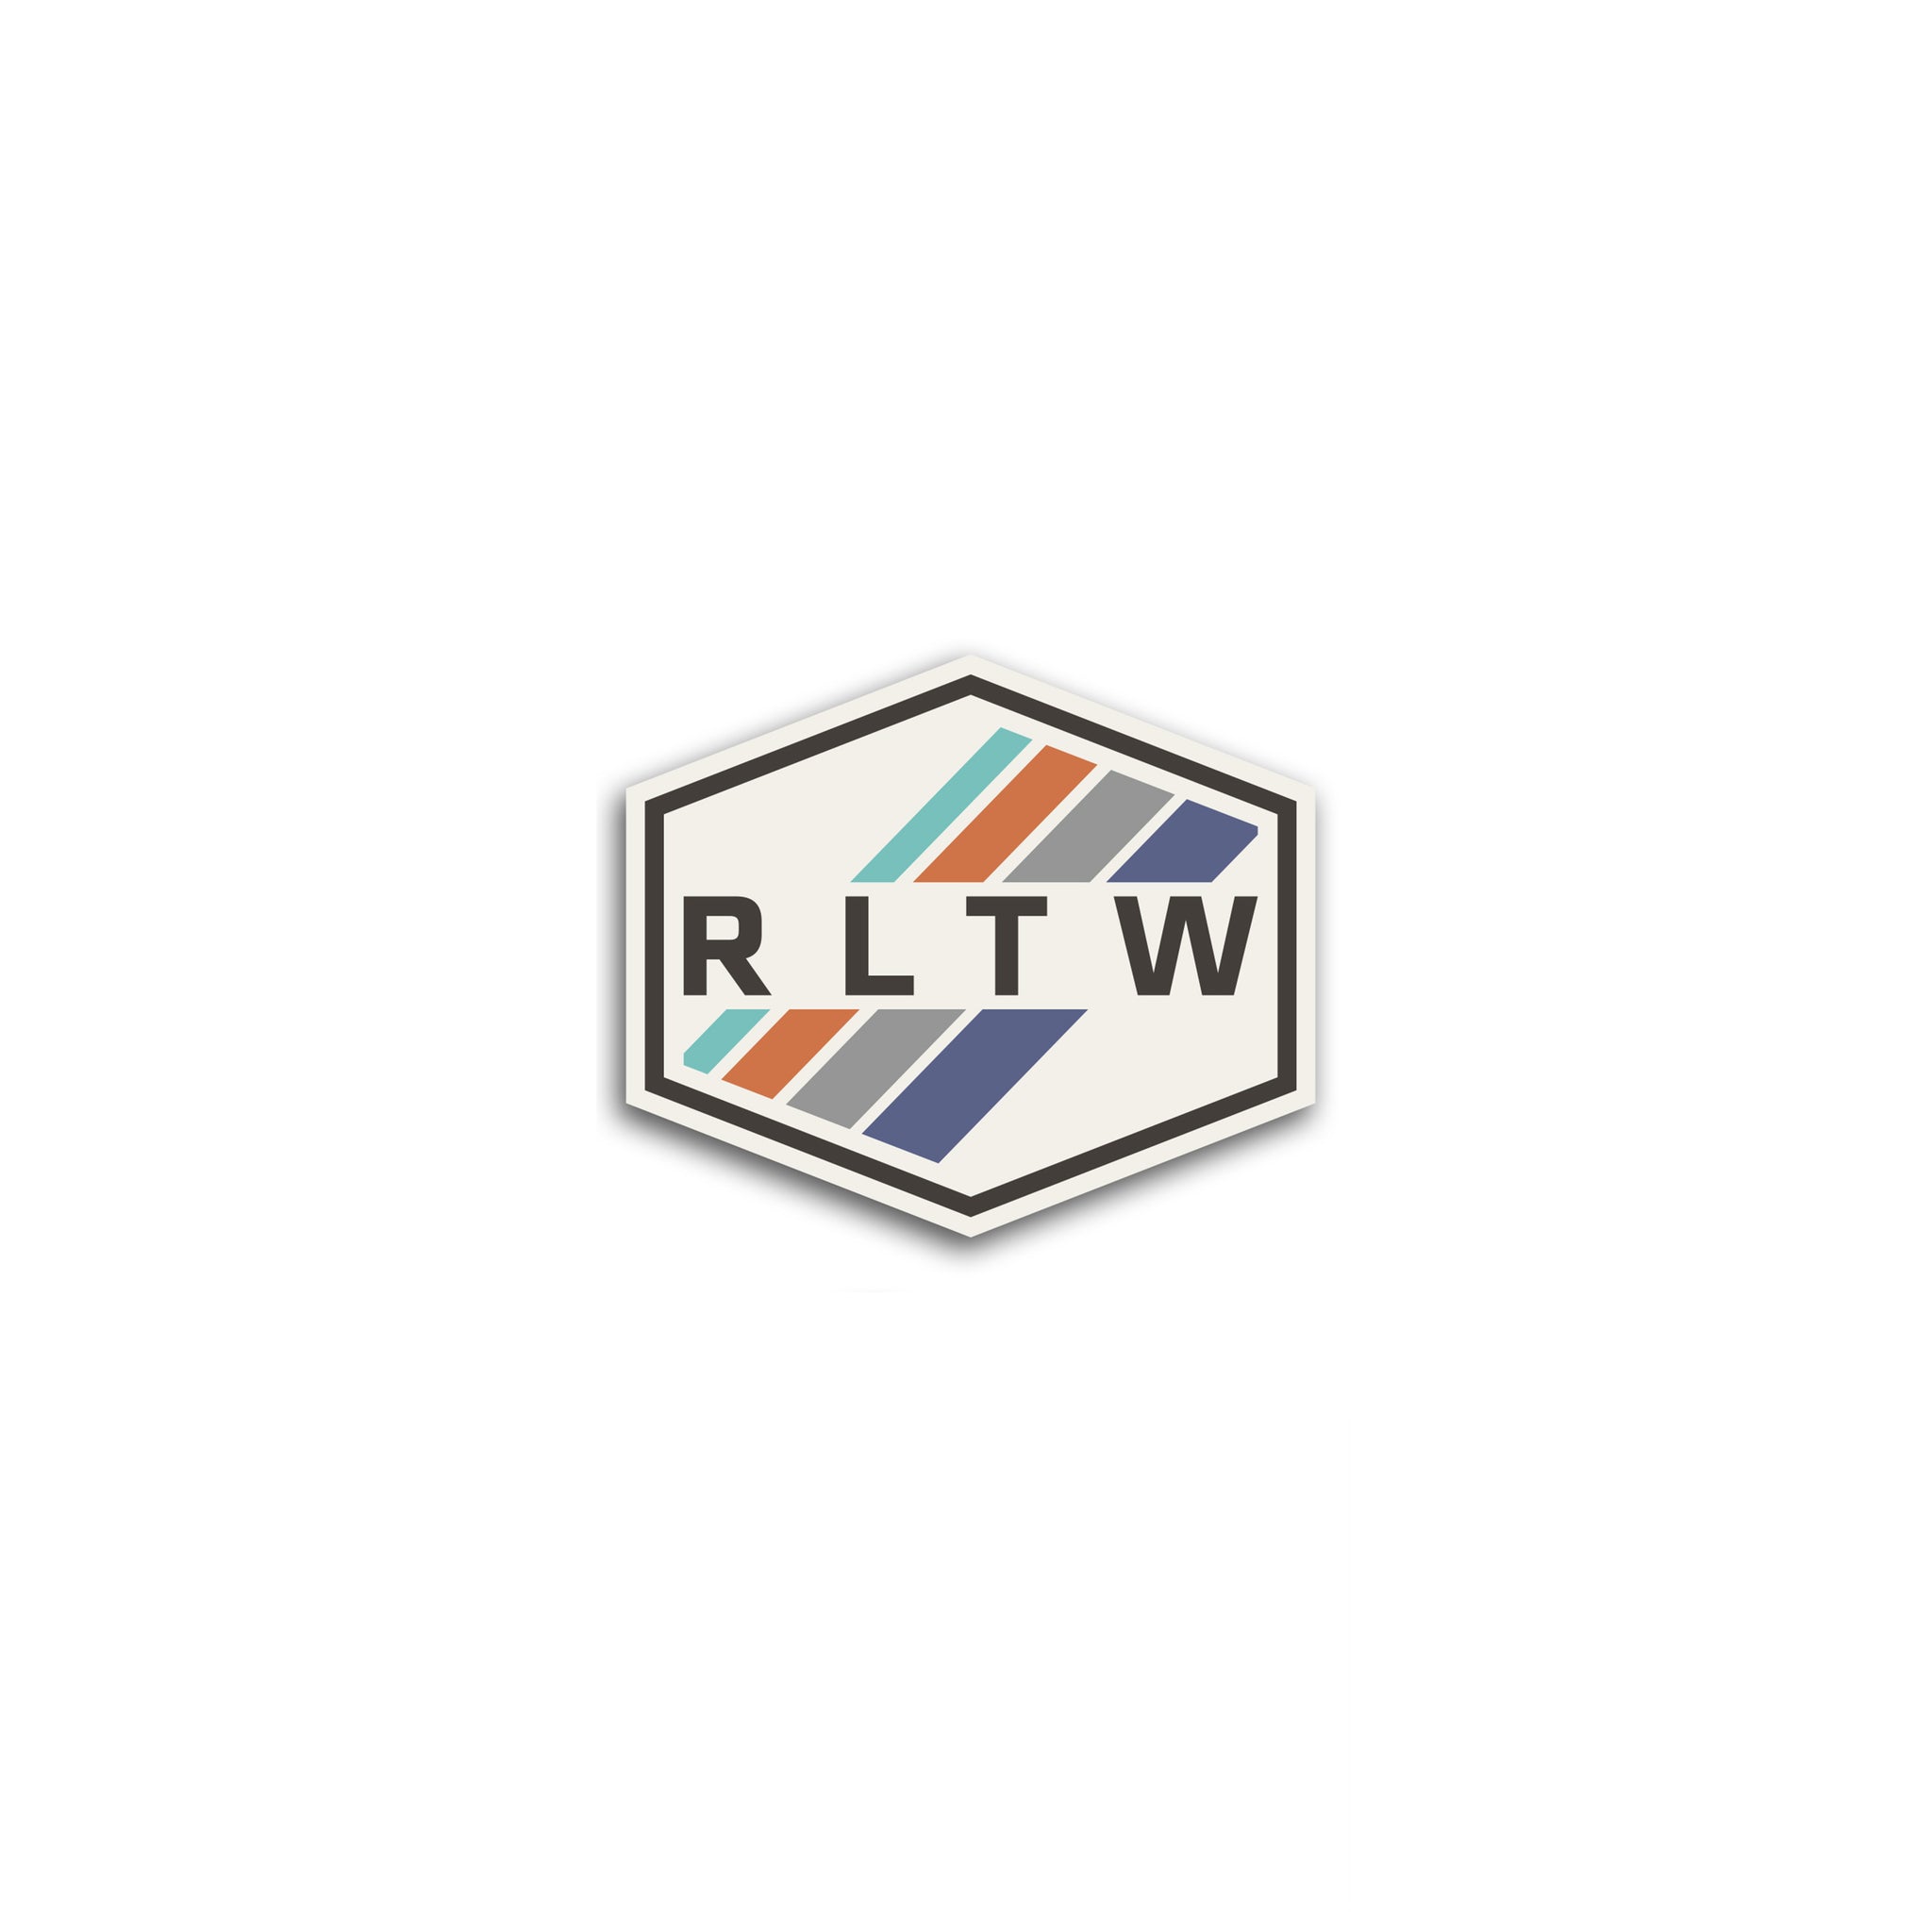 OG RLTW Culture Stripes Sticker